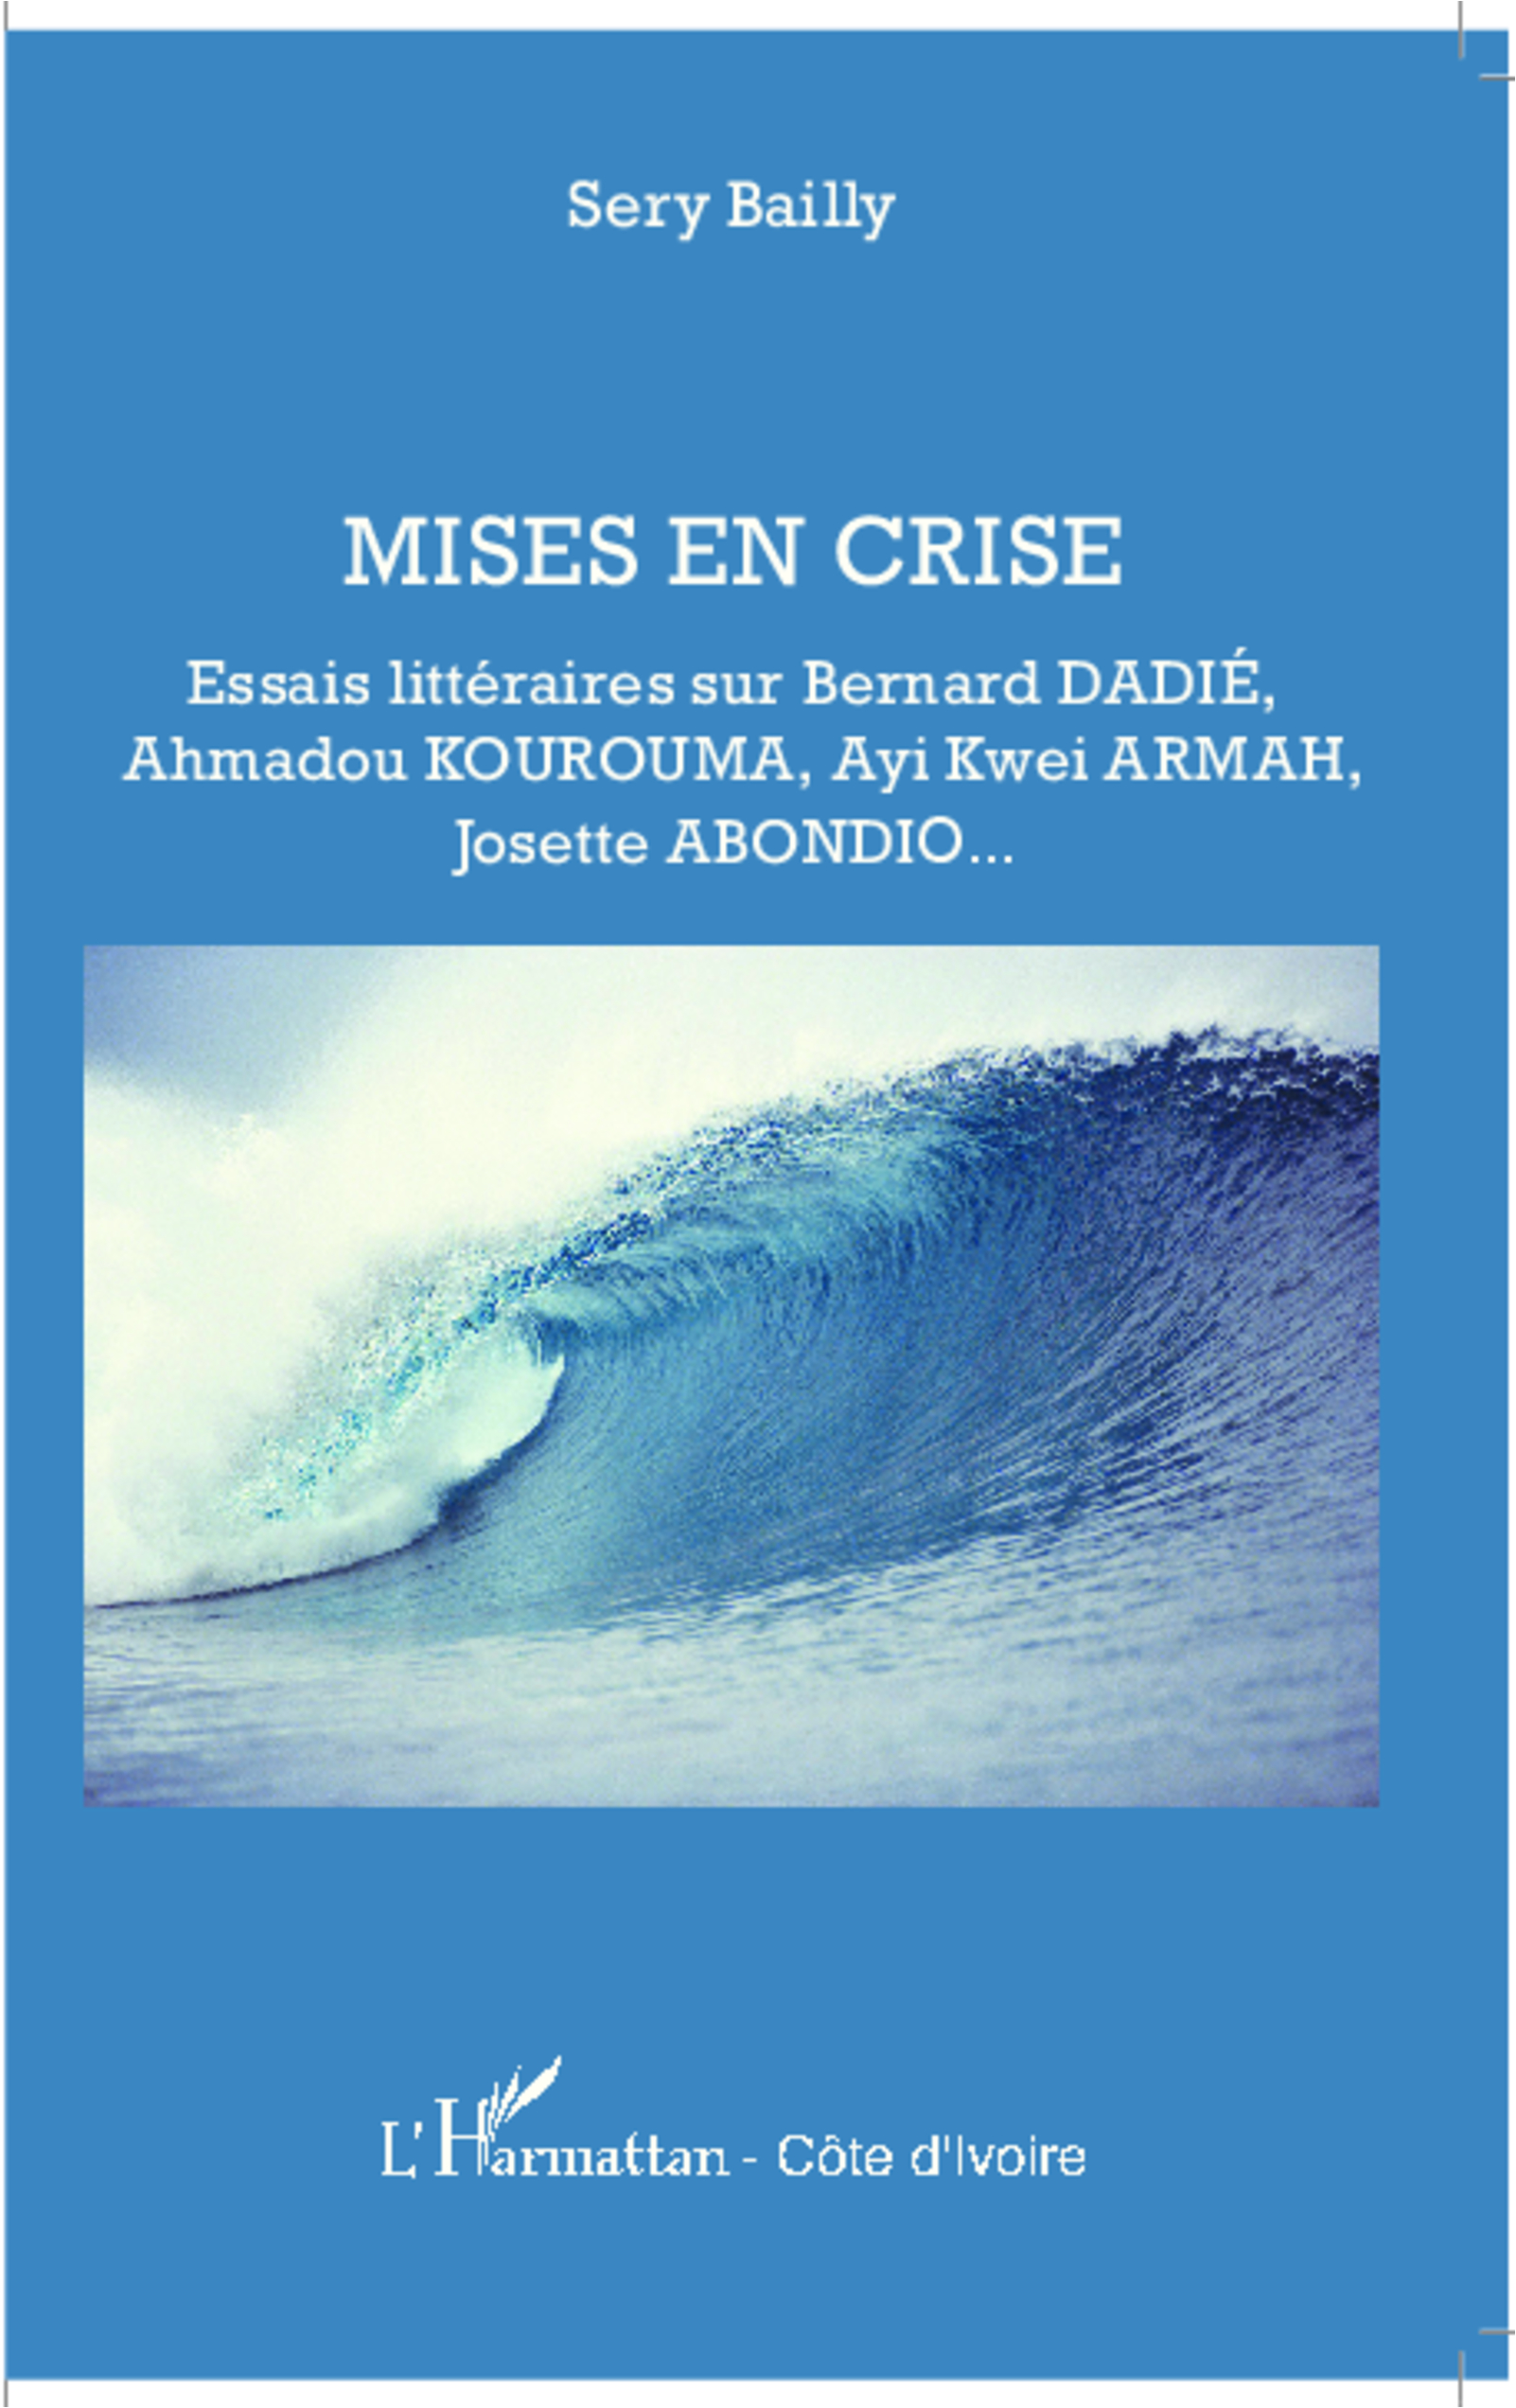 S. Bailly, Mises en crise - Essais littéraires sur Bernard Dadié, Ahmadou Kourouma, Ayi Kwei Armah, Josette Abondio.